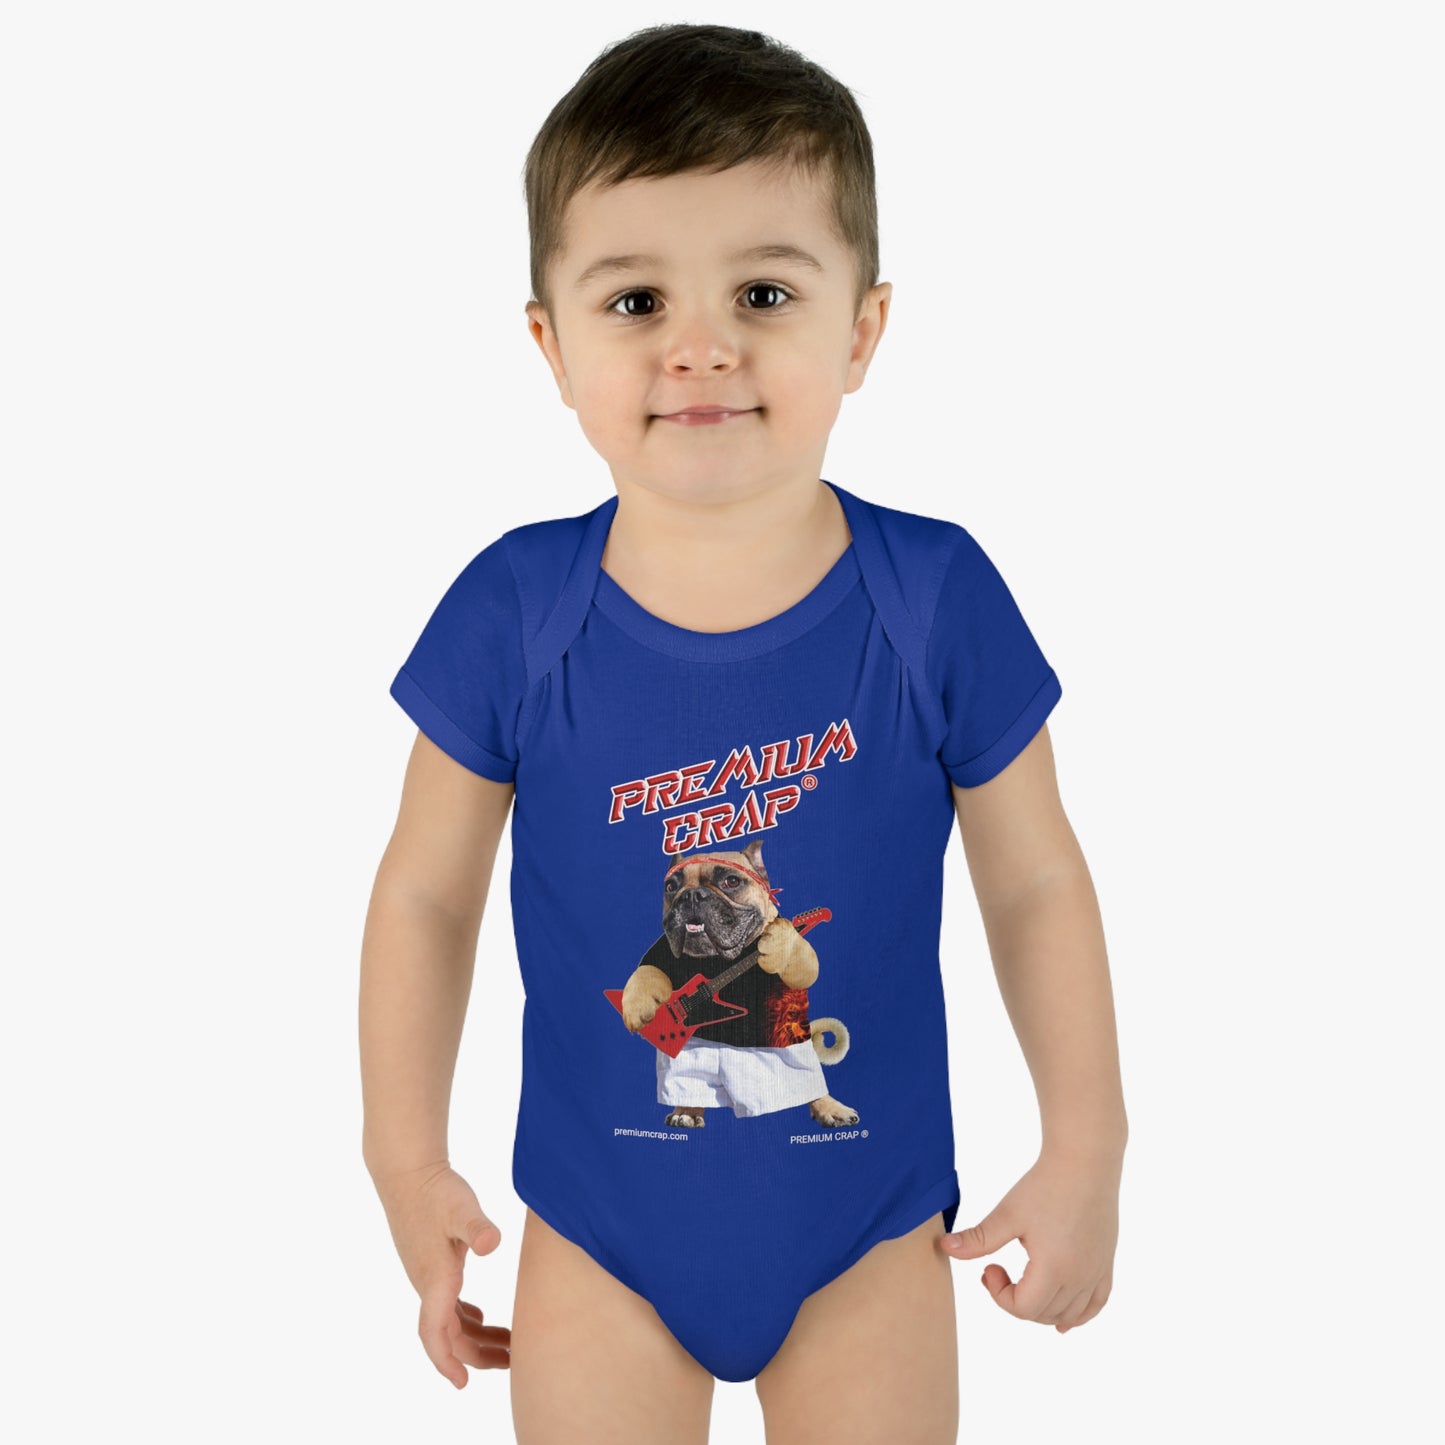 Premium Crap Infant Baby Rib Bodysuit